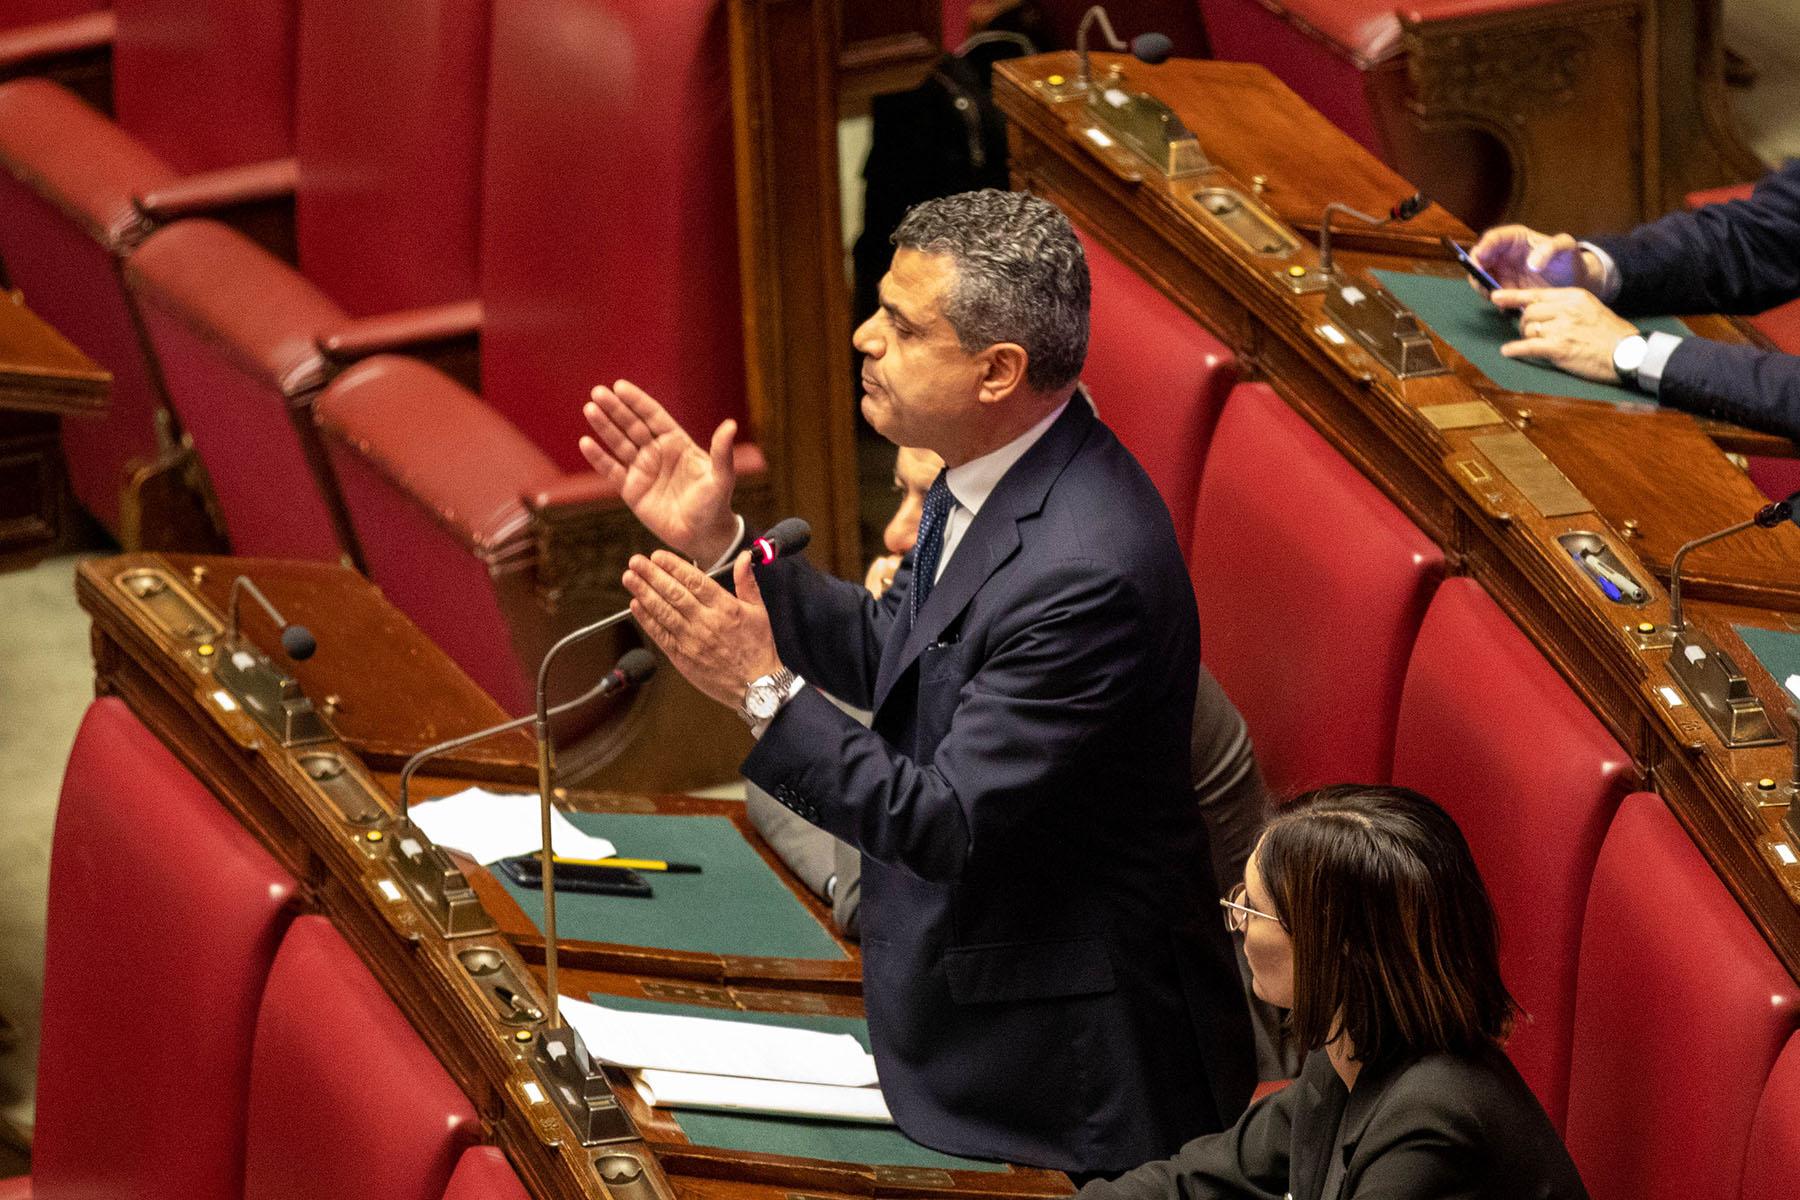 Intervento del deputato Mauro Antonio Donato Laus